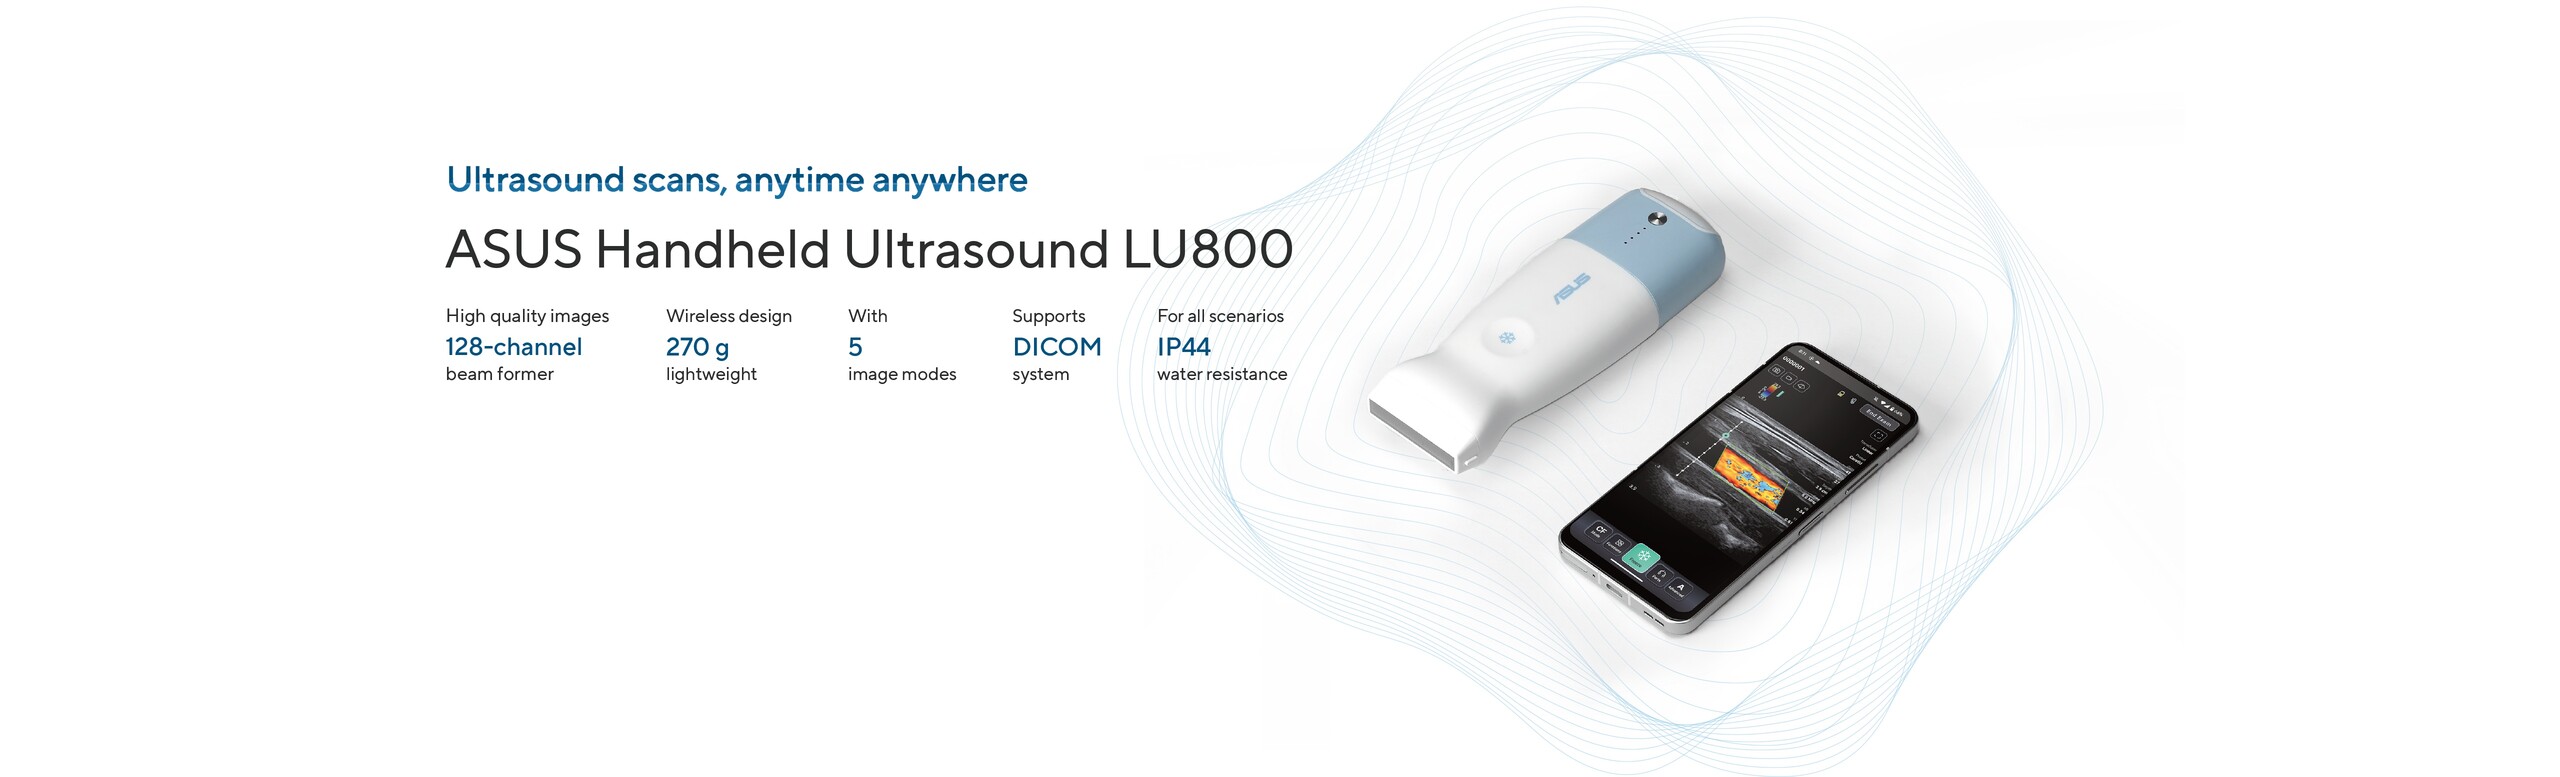 ASUS Handheld Ultrasound LU800